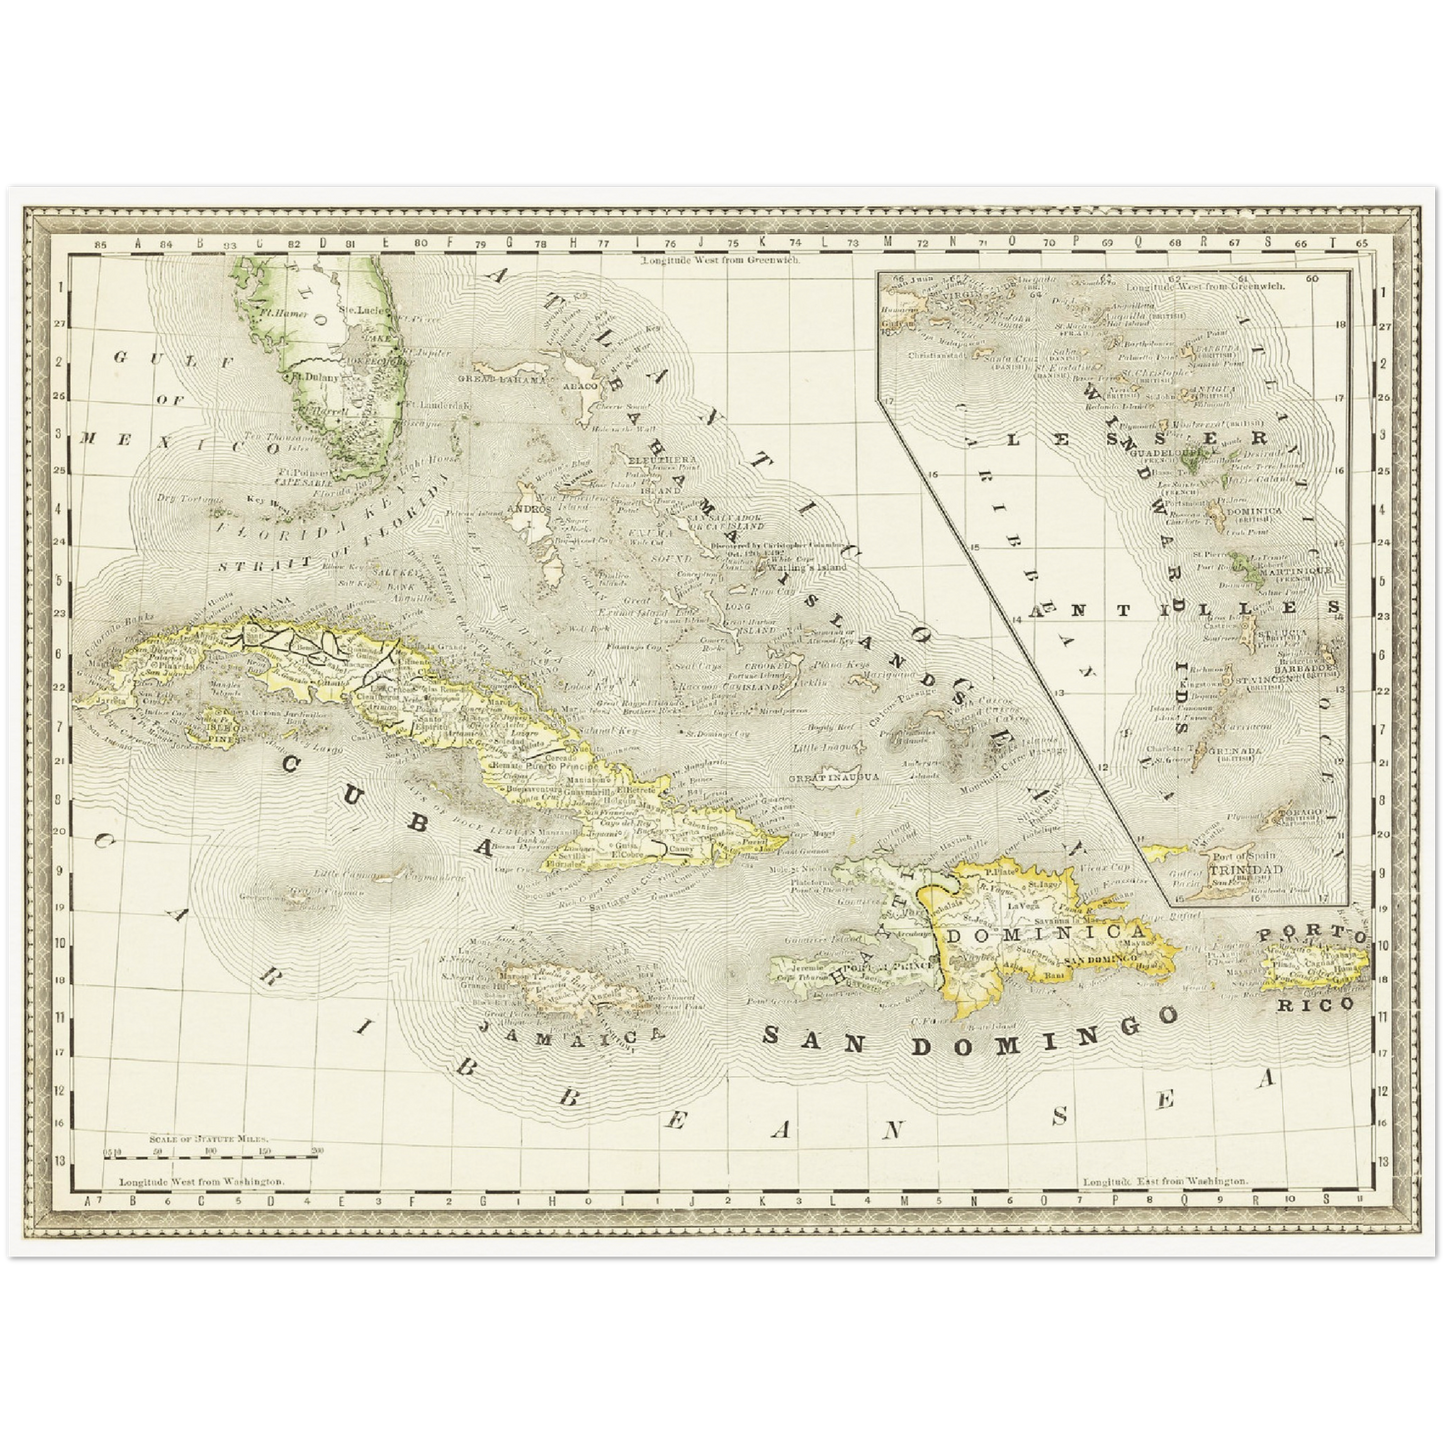 Historische Landkarte Kuba um 1882